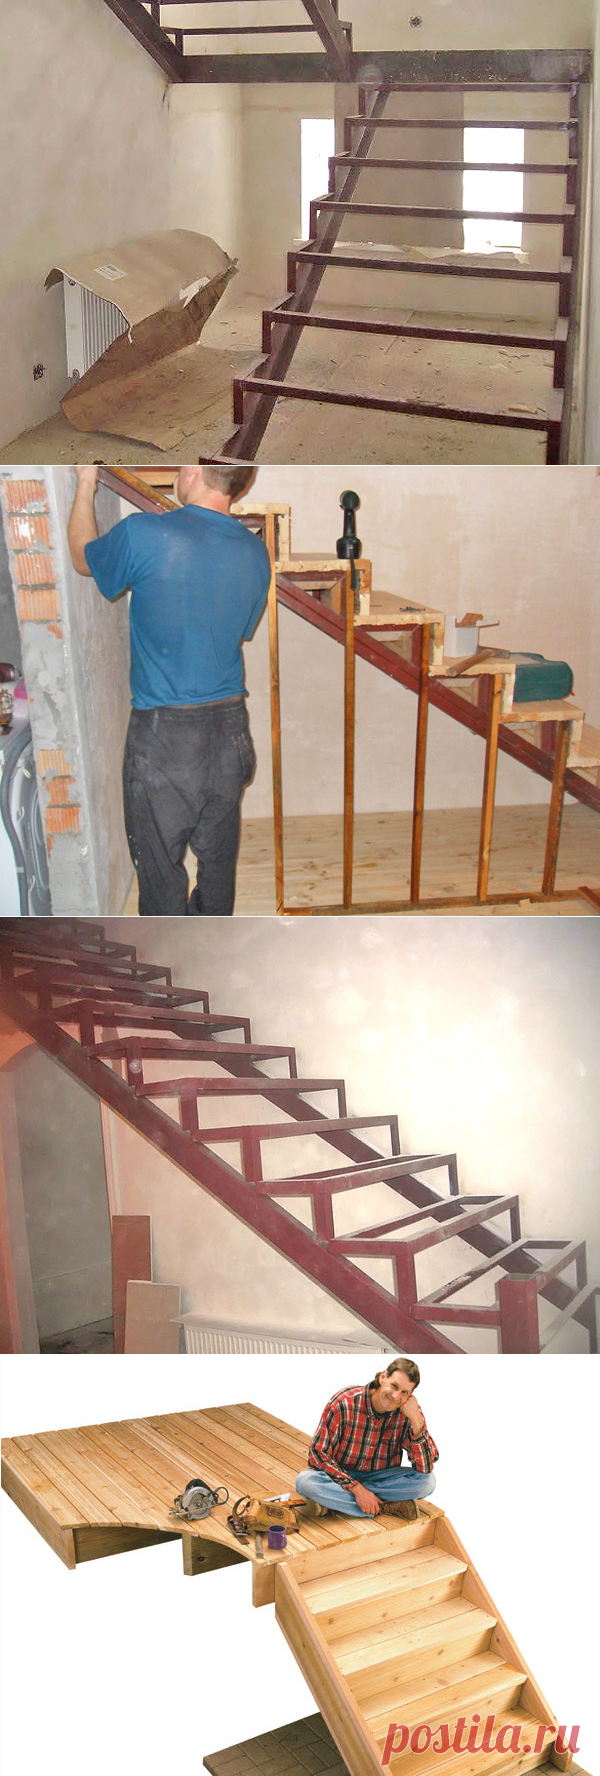 Как сделать лестницу в доме: особенности изготовления своими руками .